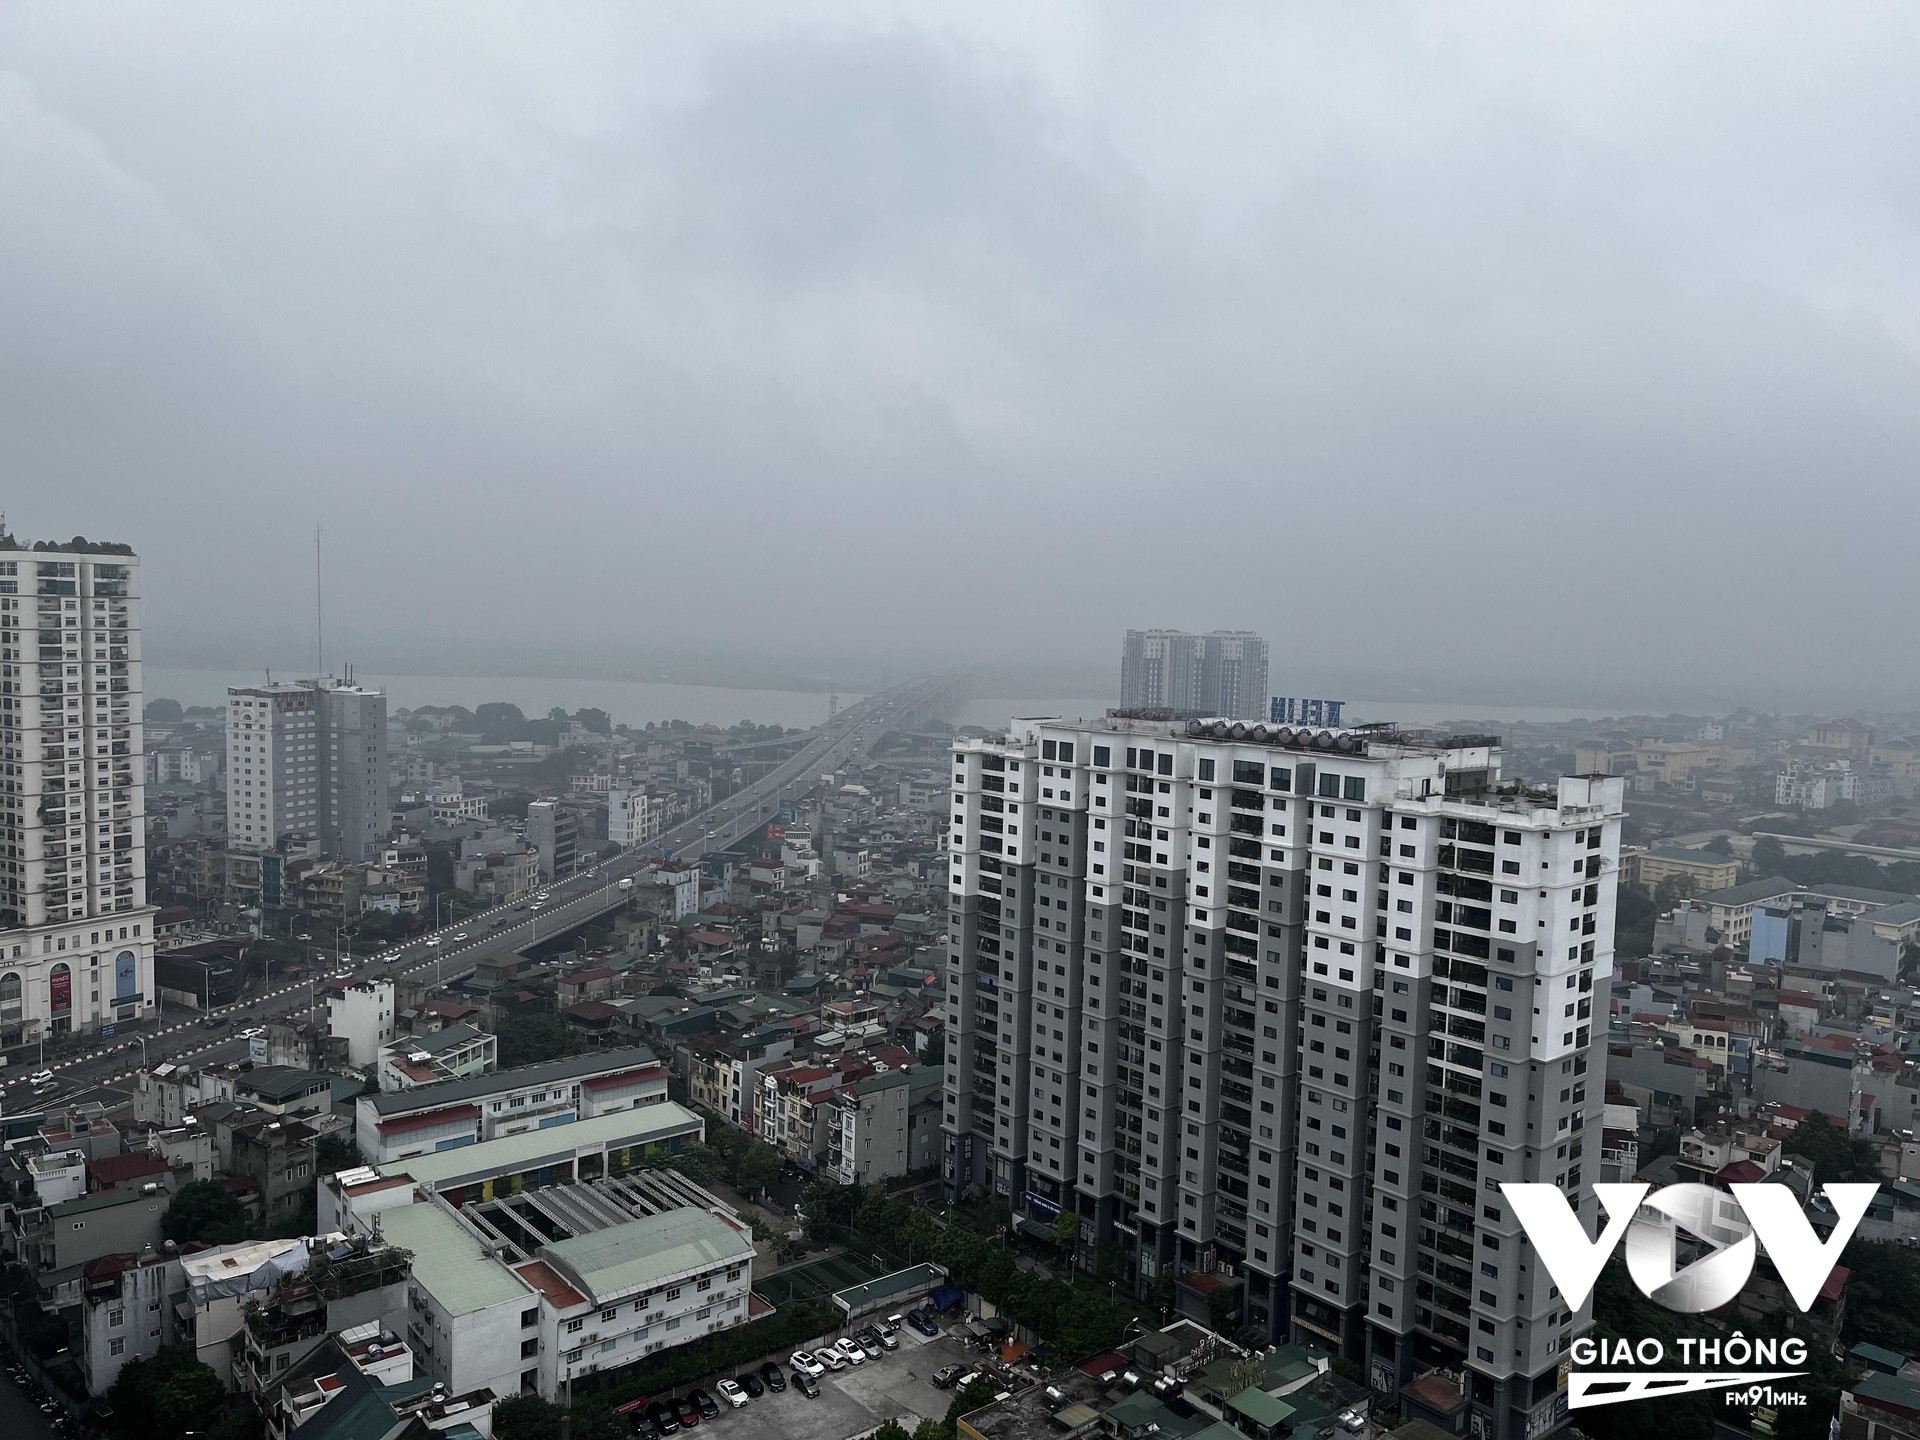 Lượng phương tiện gia tăng, cùng với thiếu biện pháp bảo vệ môi trường đang khiến Thủ đô Hà Nội là một trong những thành phố ô nhiễm nhất trên thế giới